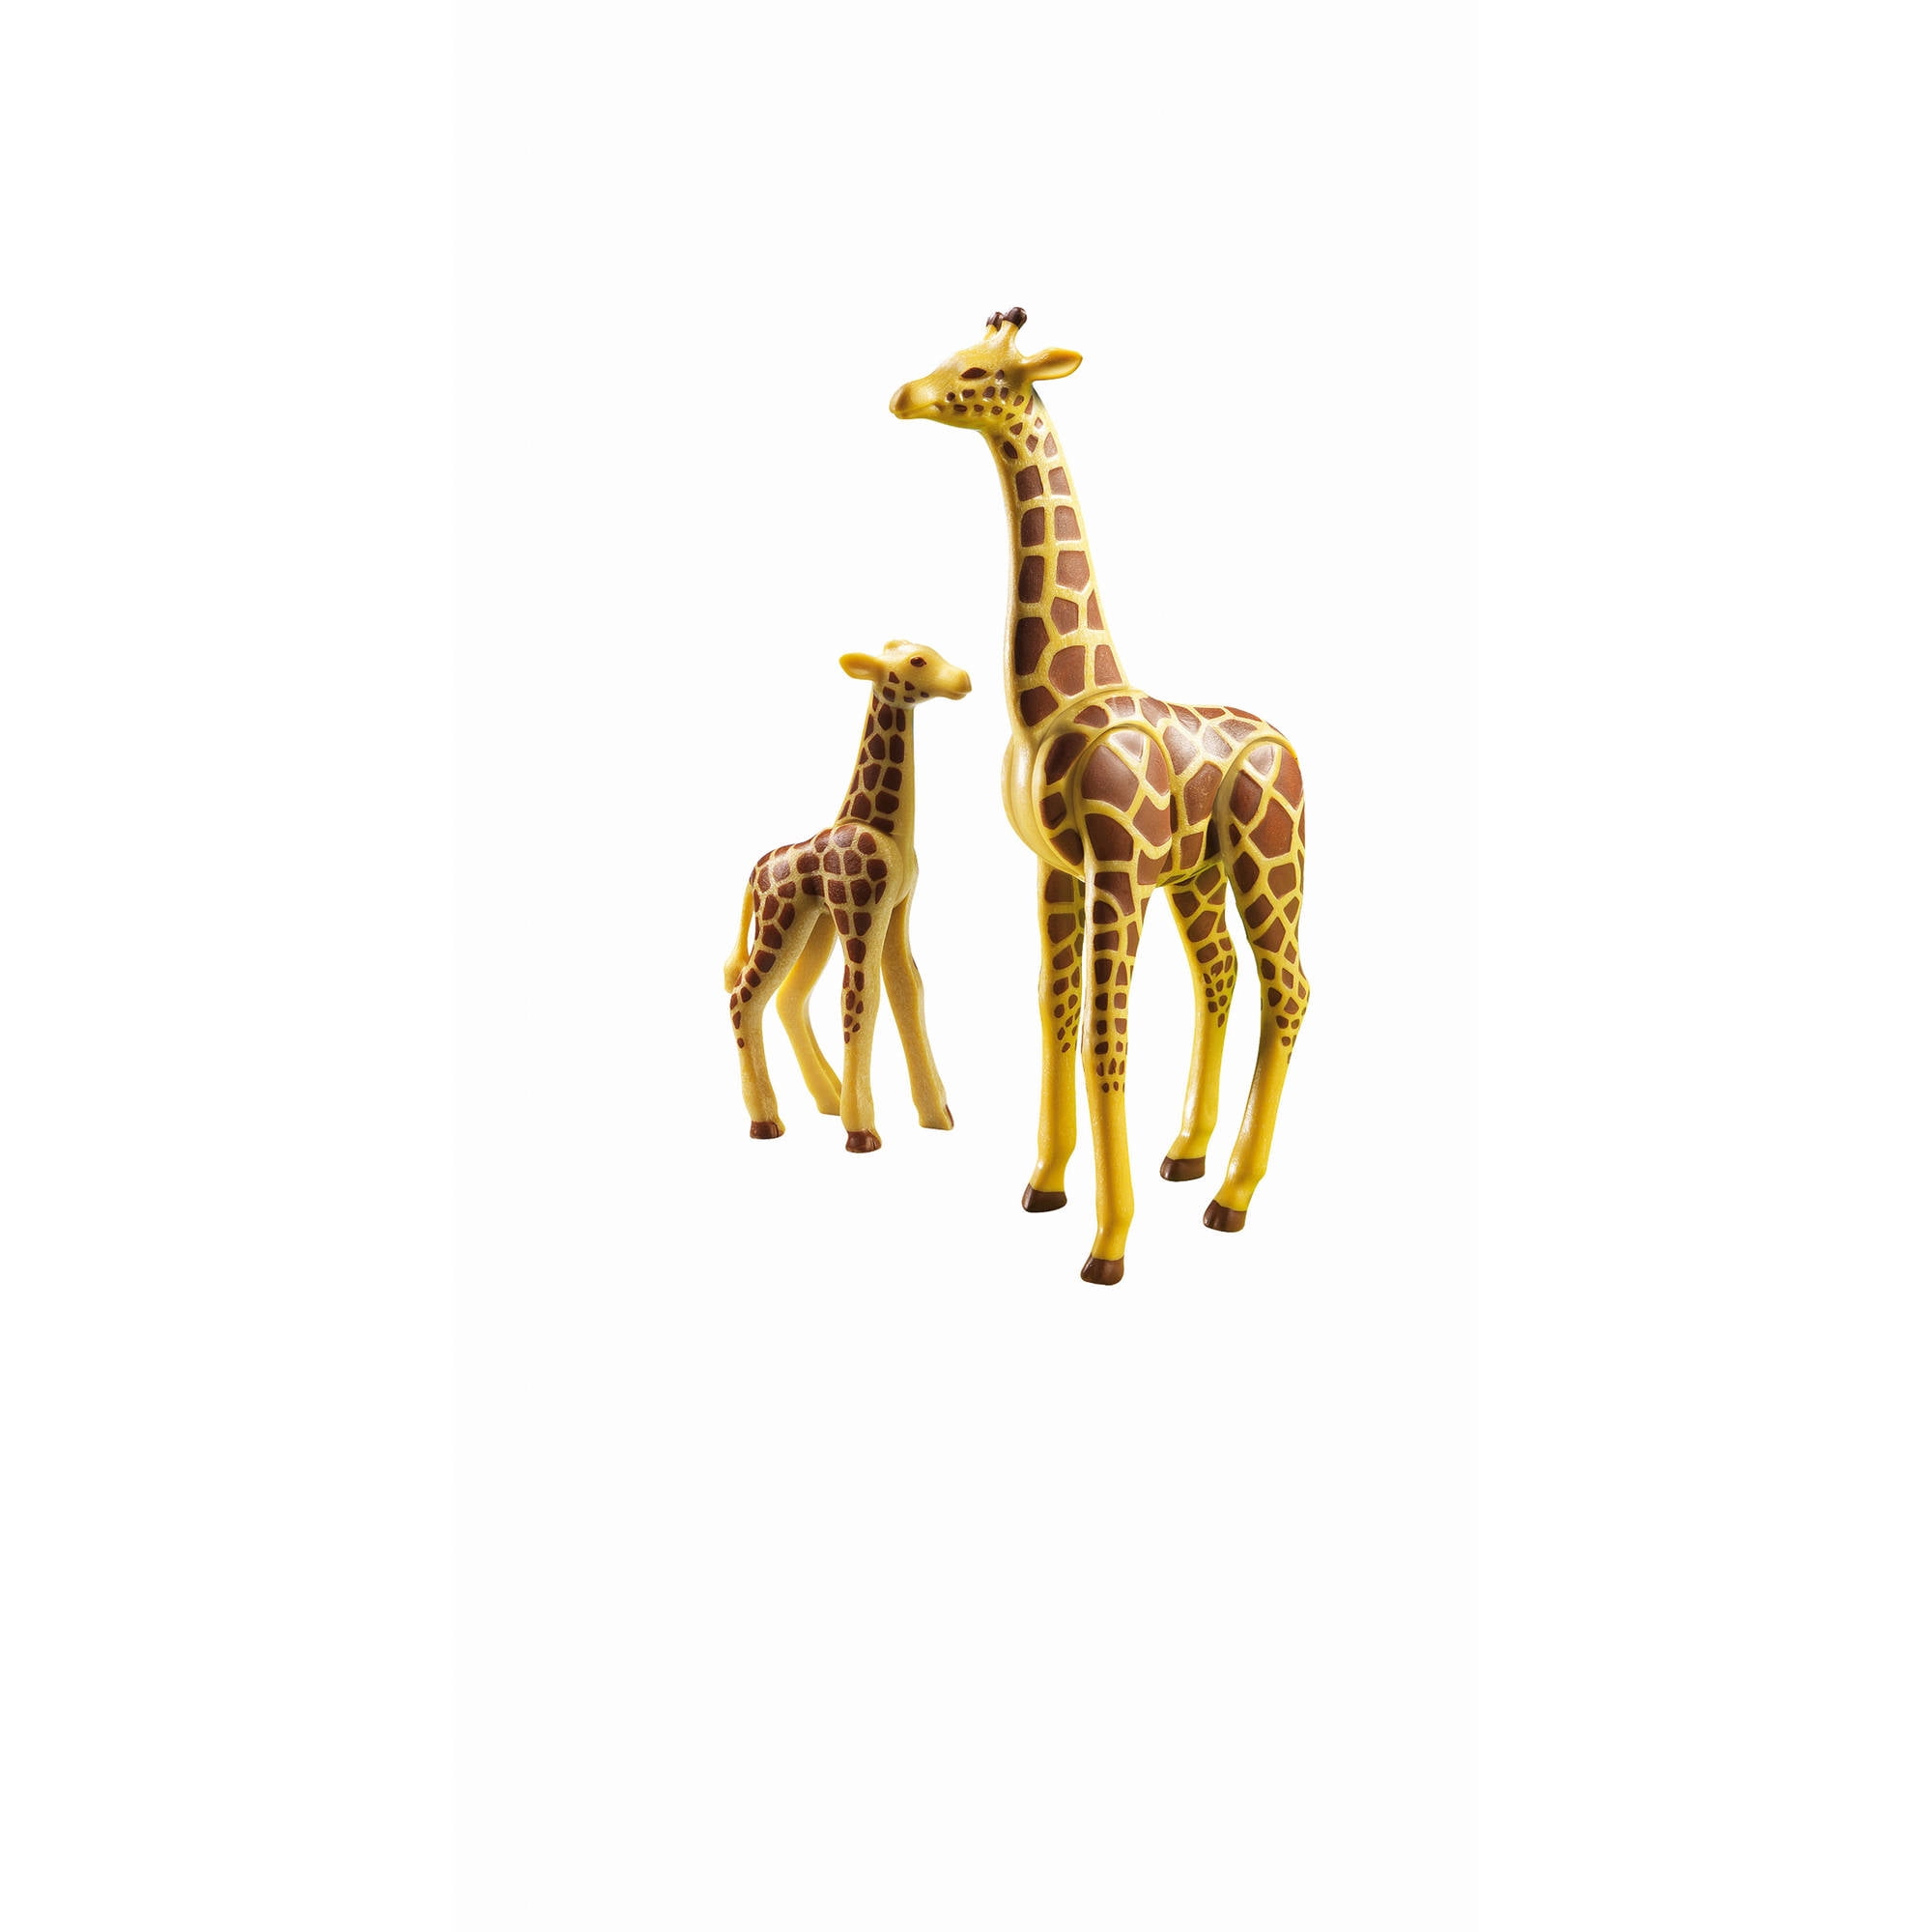 Baby giraffe NEW Playmobil Zoo/safari/wildlife animal 